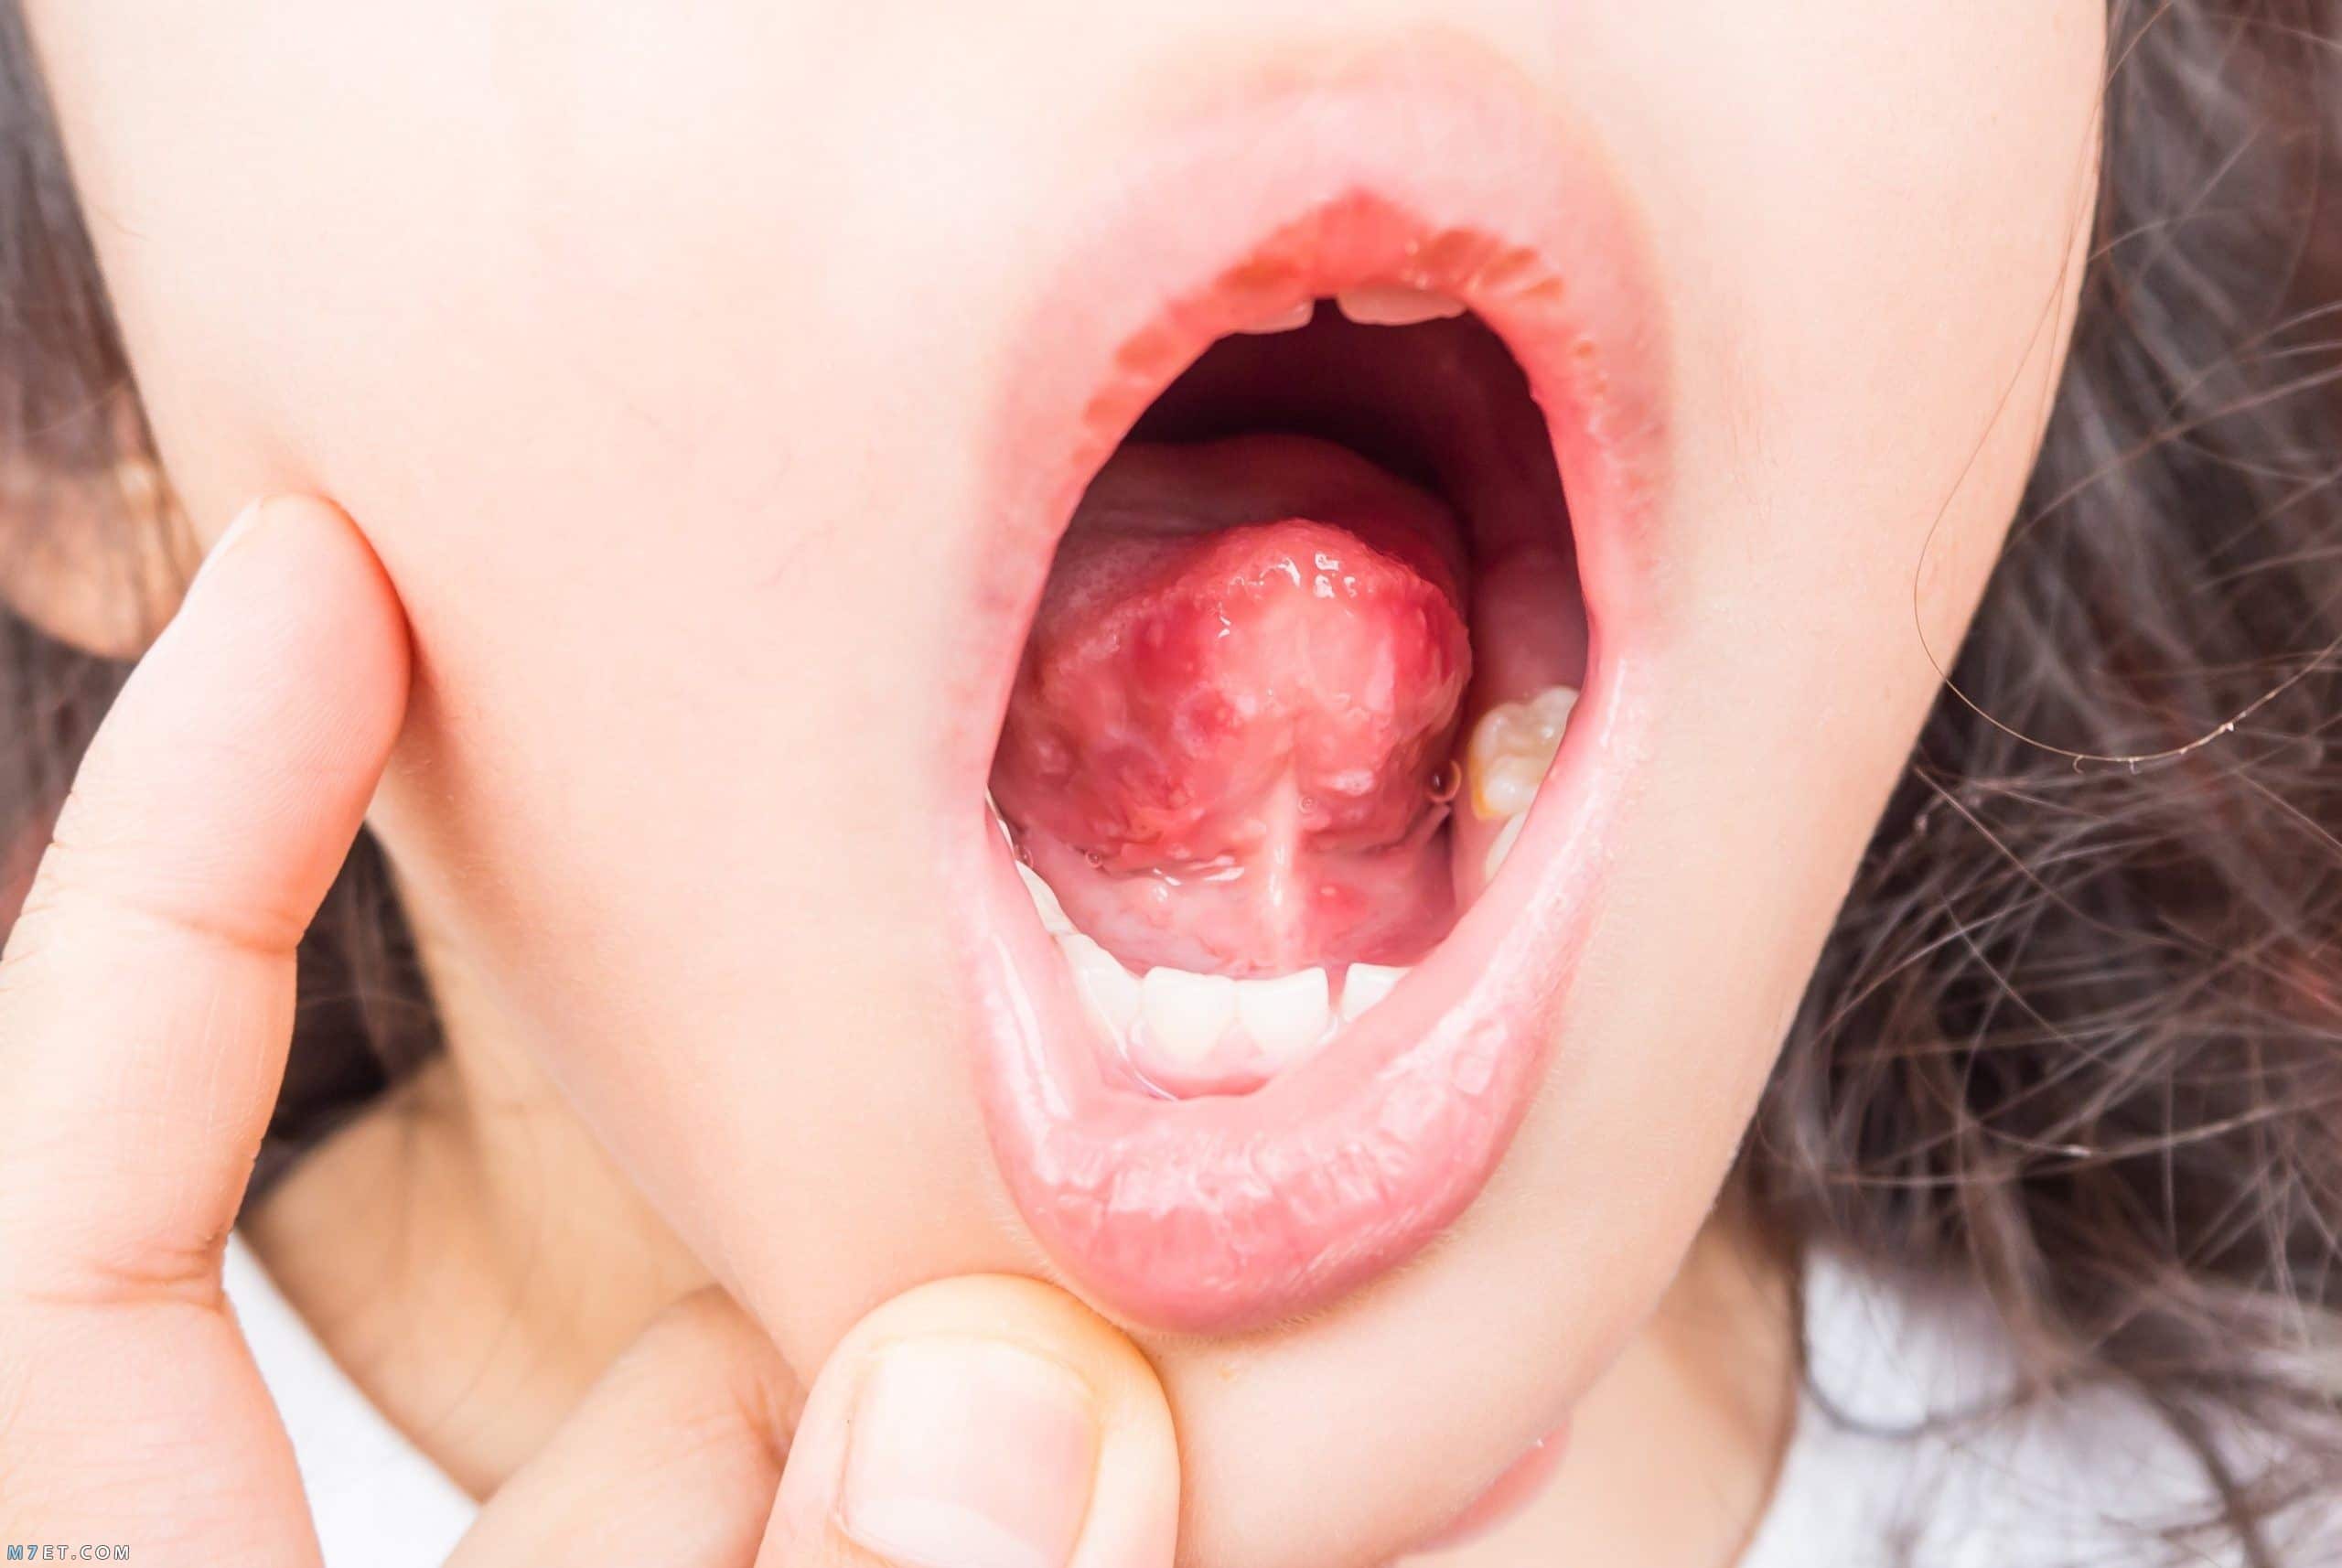  فطريات الفم عند الاطفال